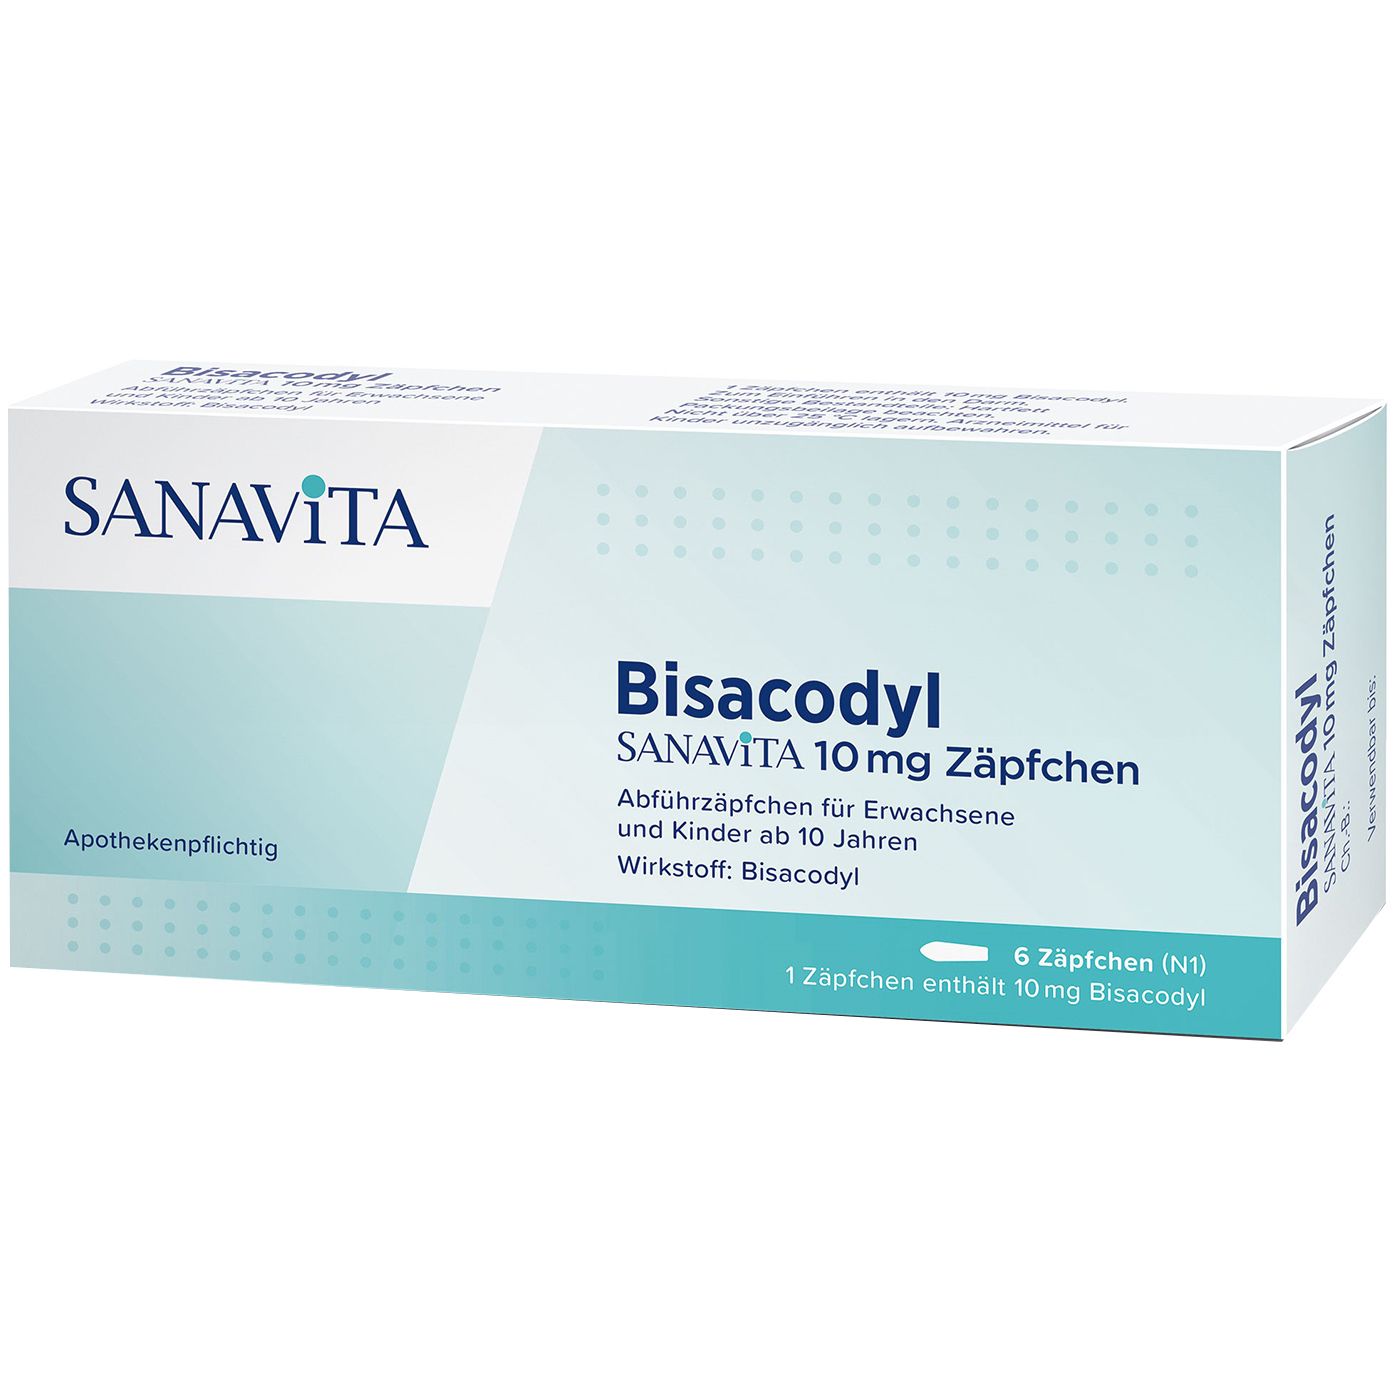 Bisacodyl SANAVITA 10 mg Zäpfchen - Sanavita